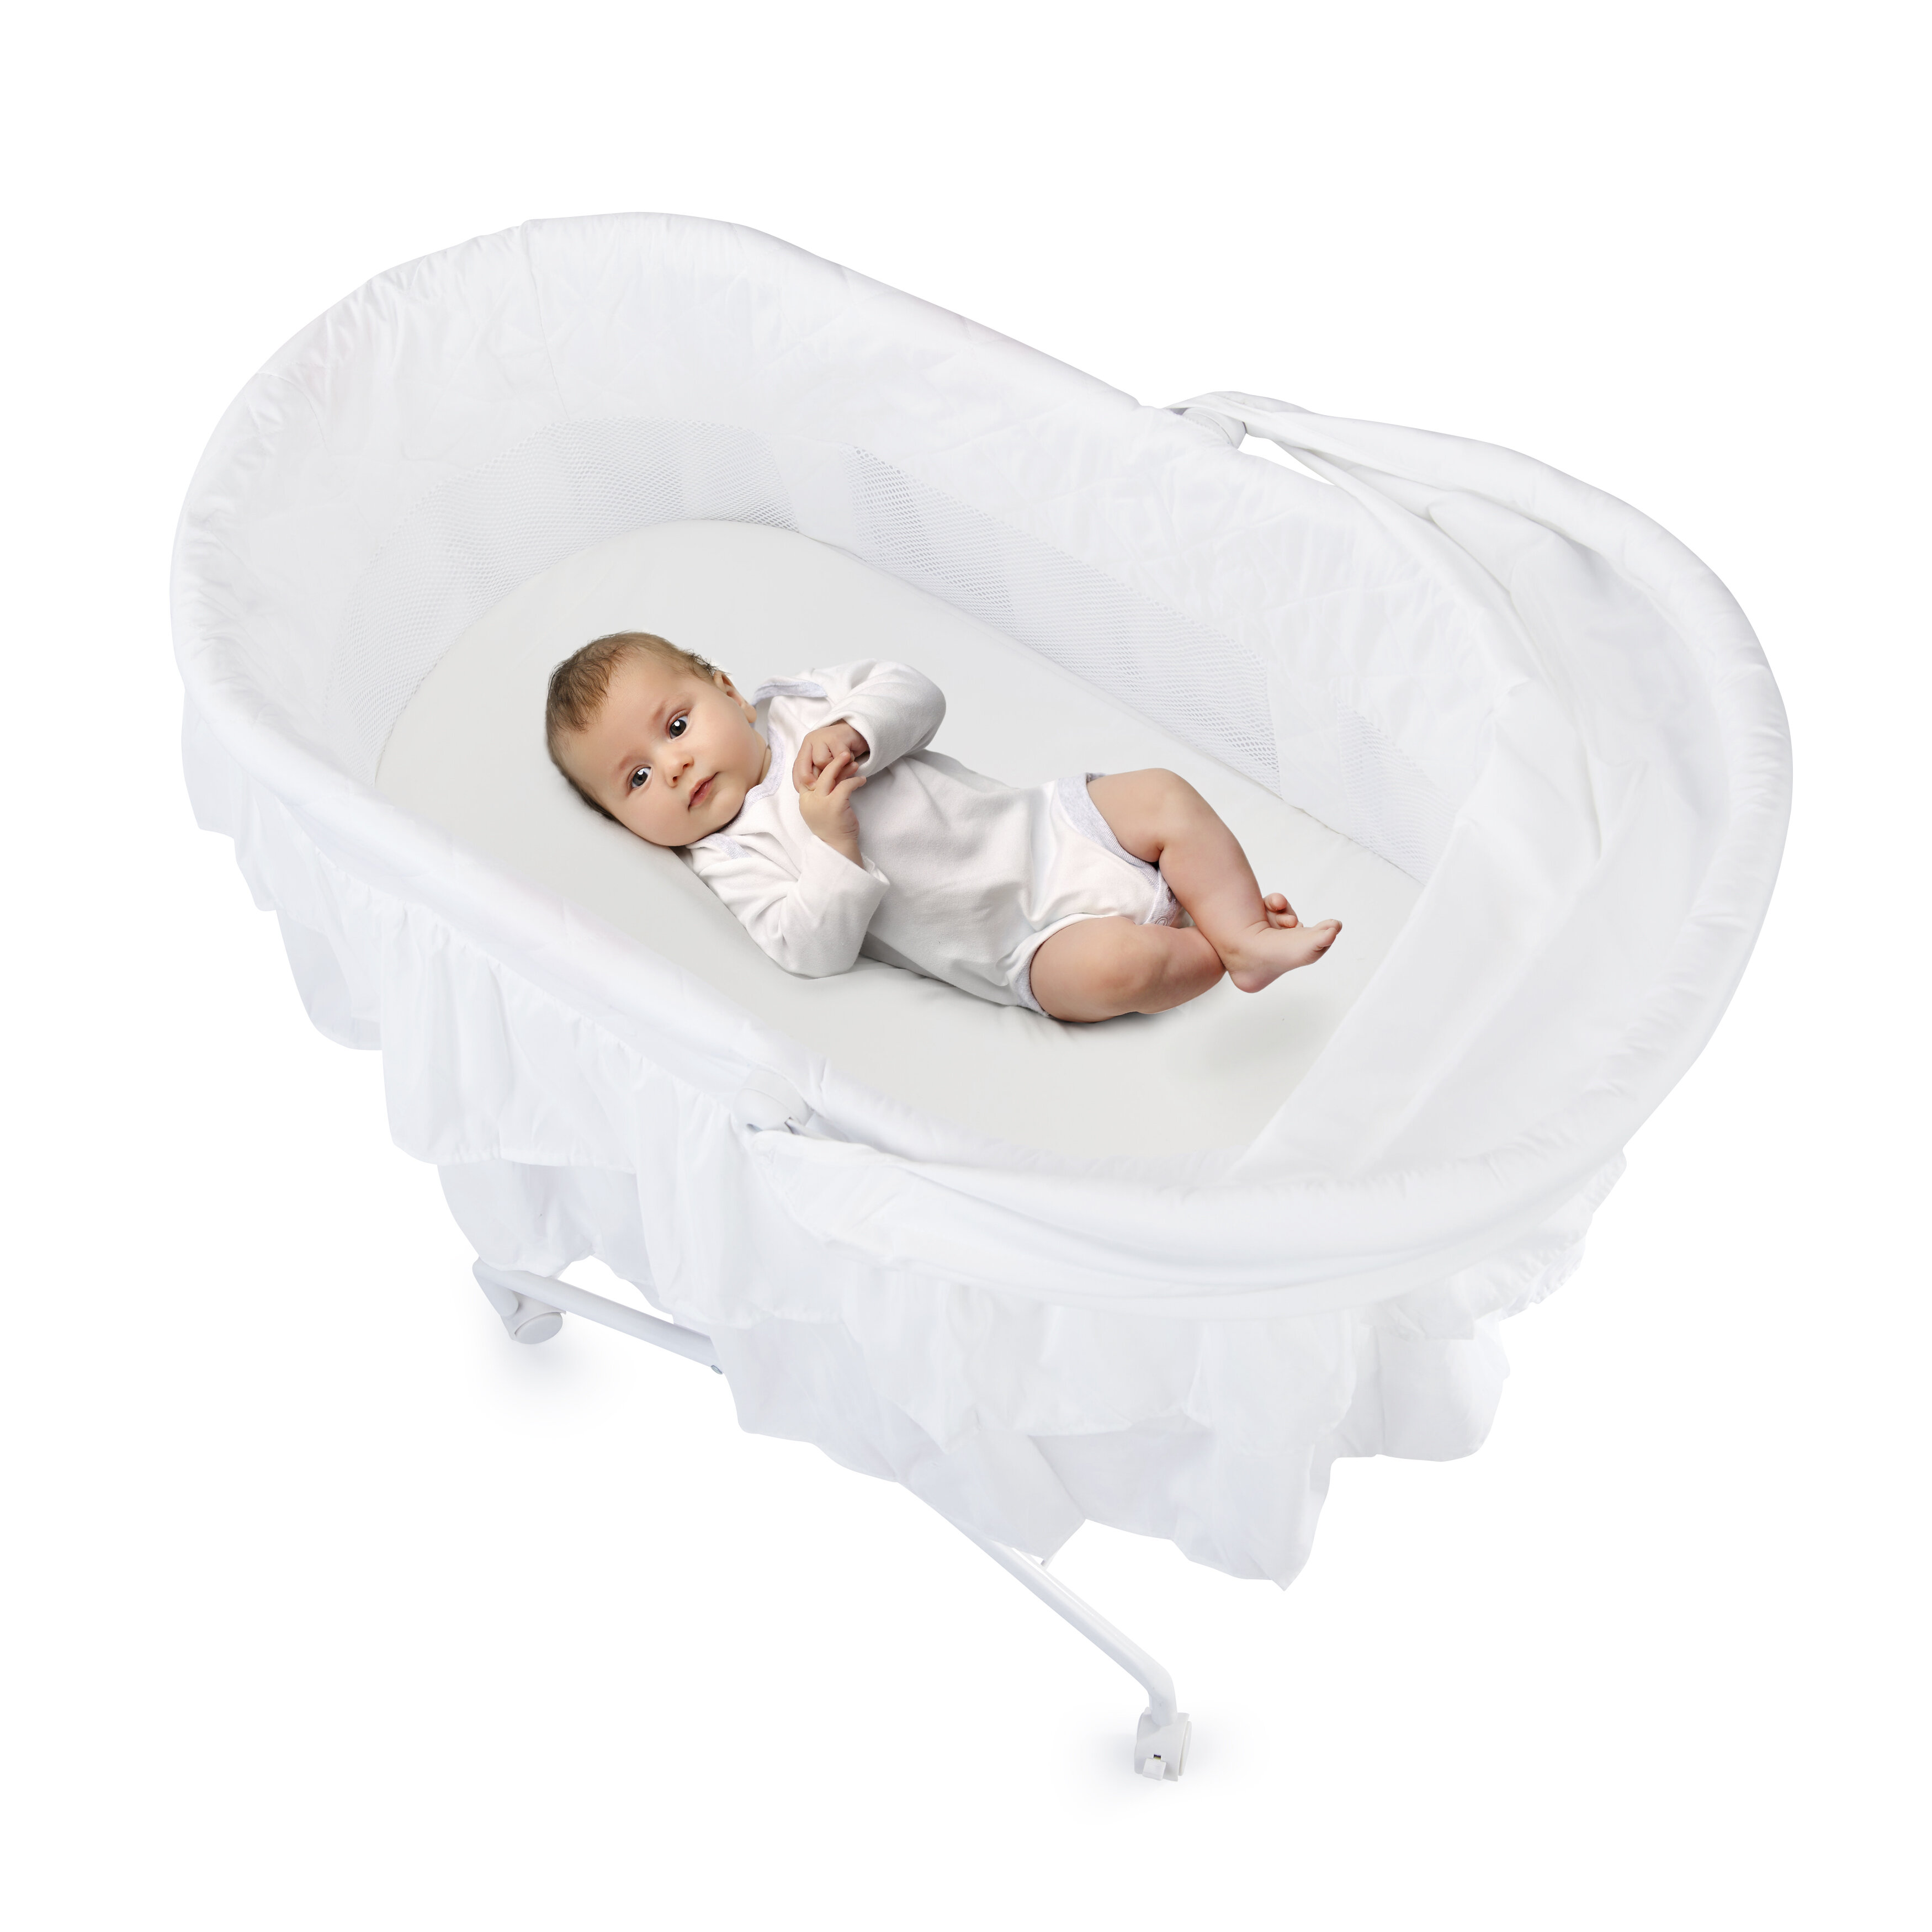 safe bassinet for newborn